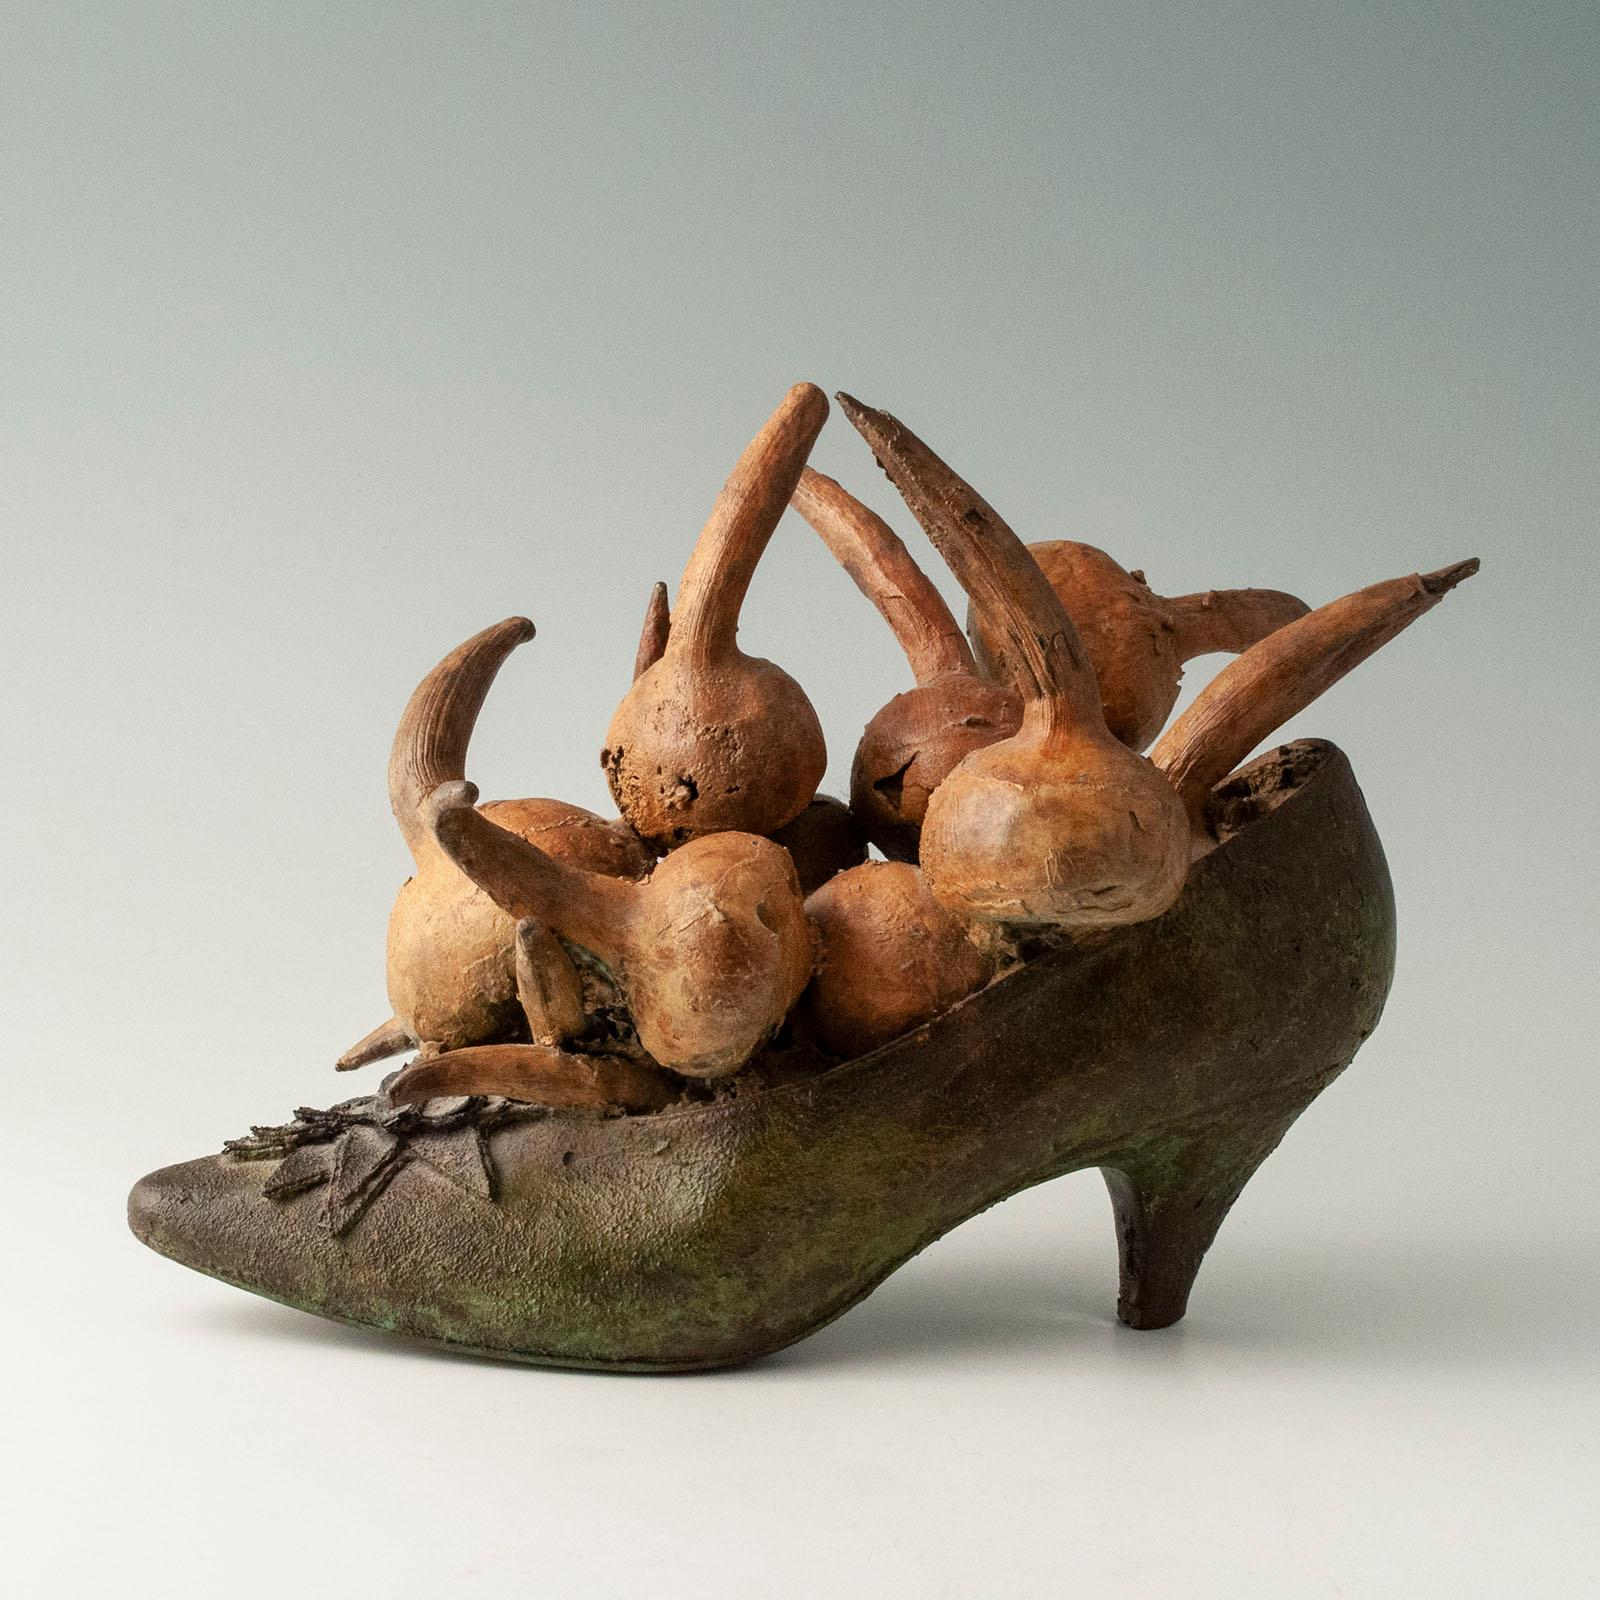 Steve Tobin (geb. 1957) ist ein amerikanischer Bildhauer, der hauptsächlich in Bronze, Stahl, Ton und Glas arbeitet. Dieser skurrile Bronzegussschuh mit Zwiebeln gehört zu einer Serie von 100 Exemplaren, die er mit verschiedenen Gemüsesorten, Obst